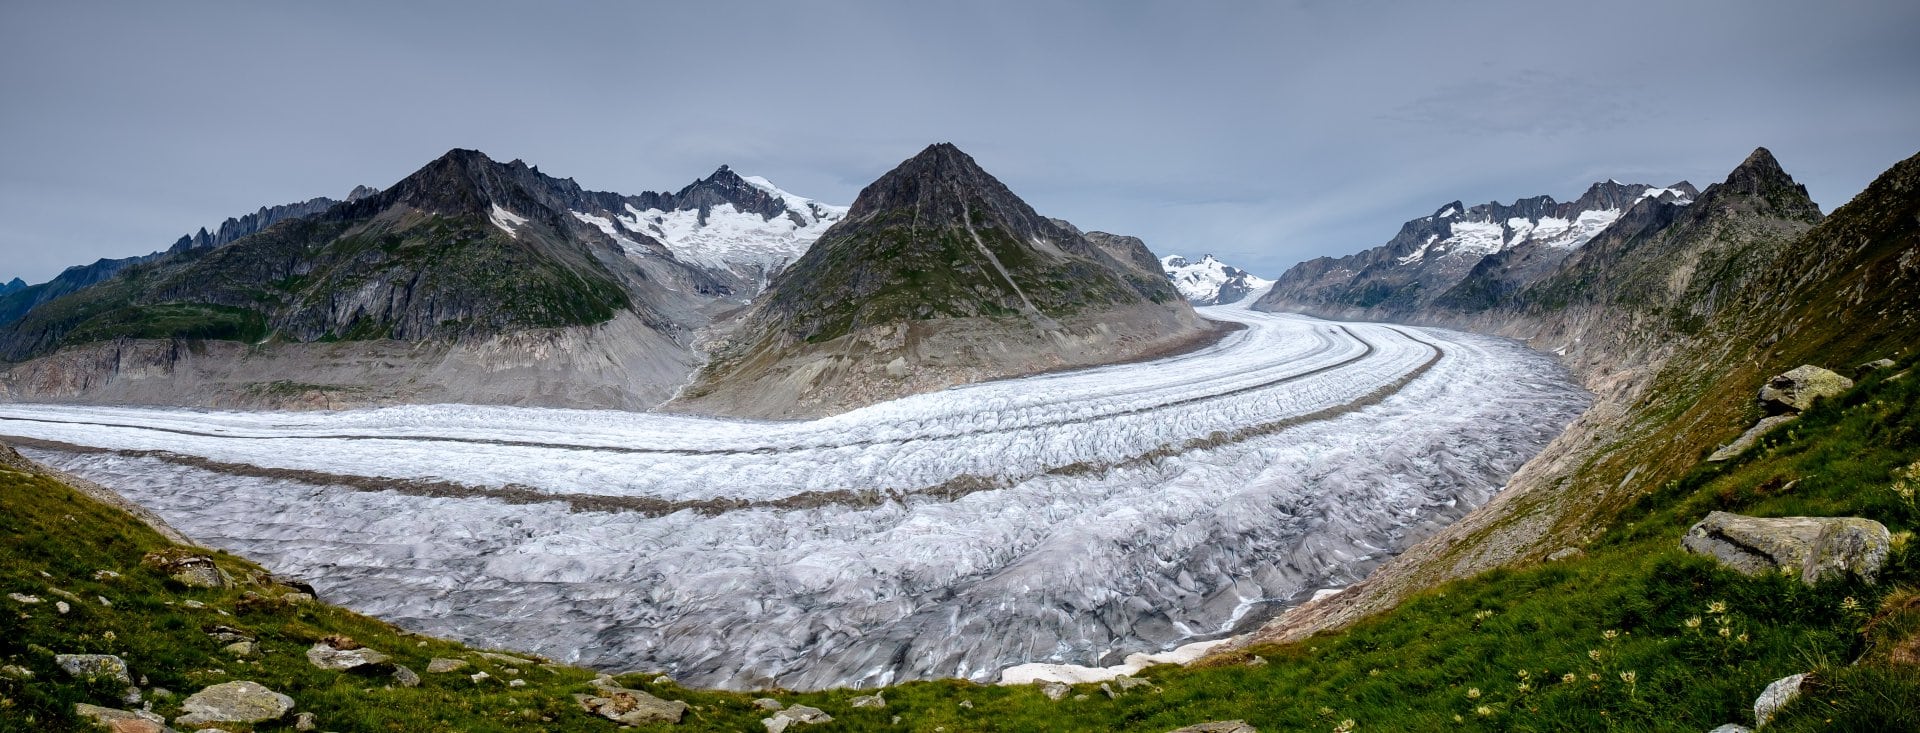 스위스 베트머호른(Bettmerhorn)에서 보는 그로스 알래치(Grosser Aletsch) 빙하, Betten), Image - til-jentzsch-